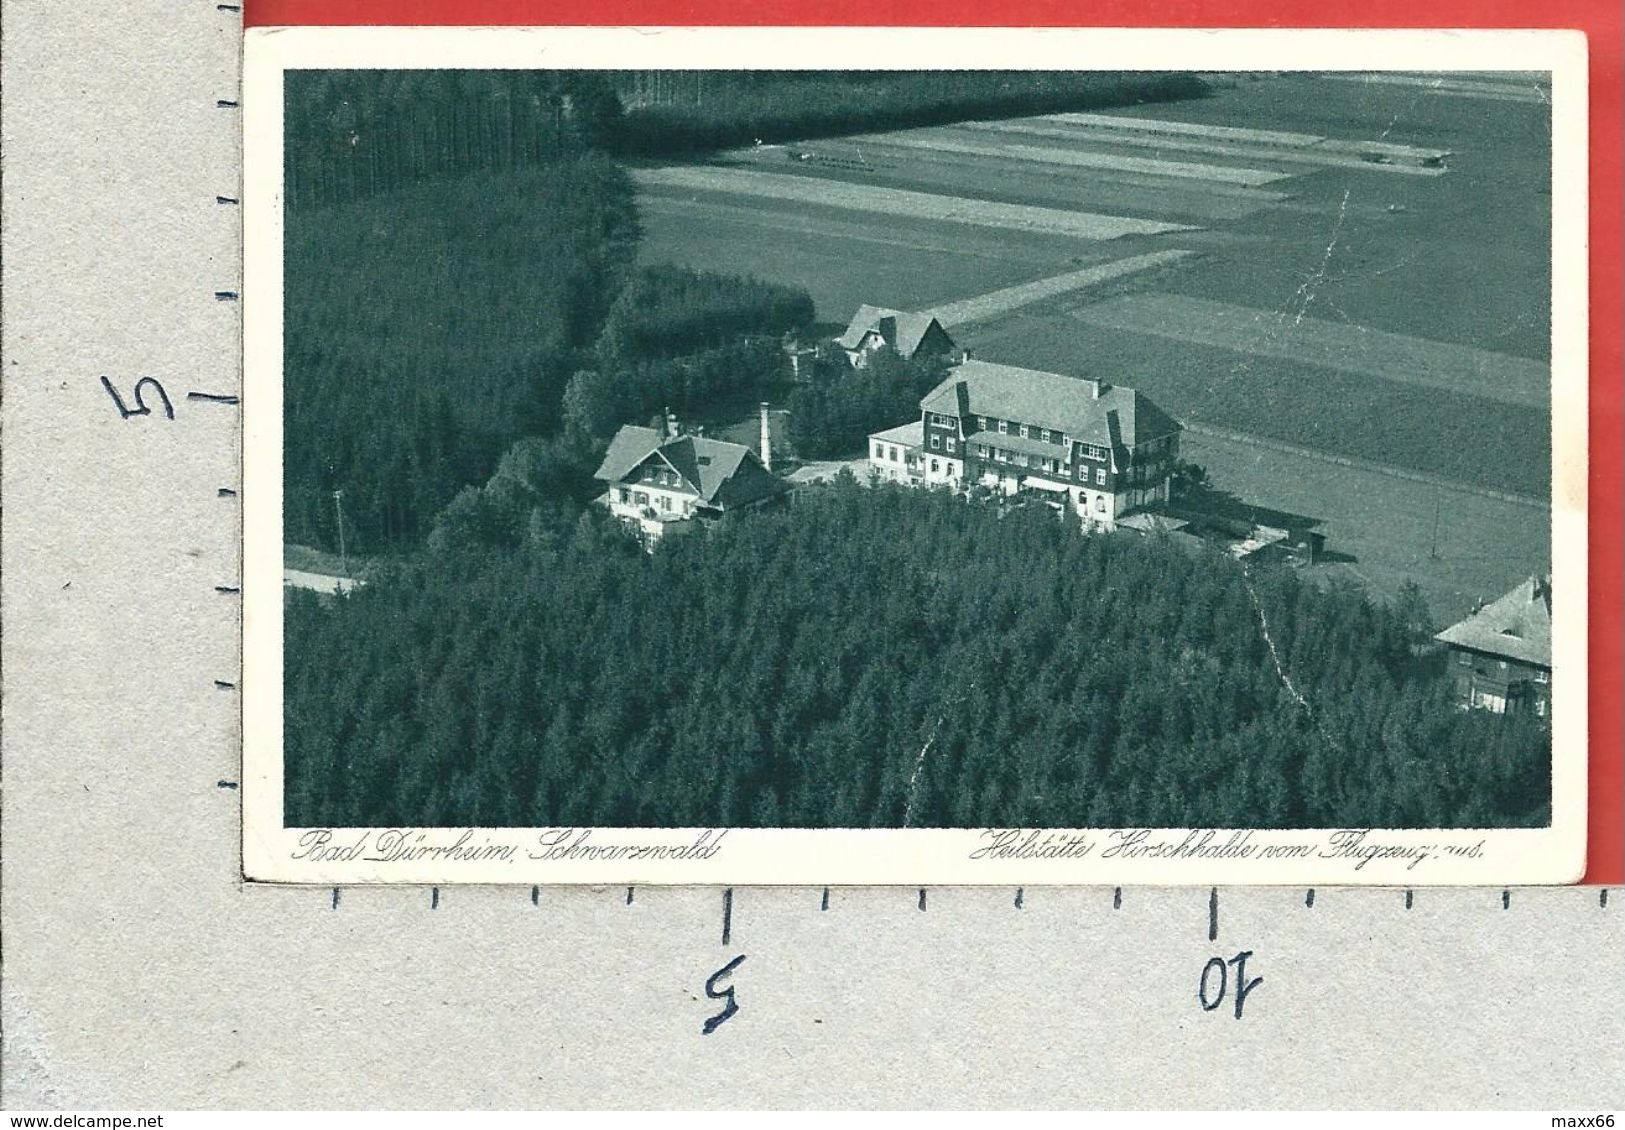 CARTOLINA VG GERMANIA - BAD DURRHEIM Heilstätte Hirschhalde Vom Flugzeug Aus - 9 X 14 - ANN. 1929 - Bad Duerrheim